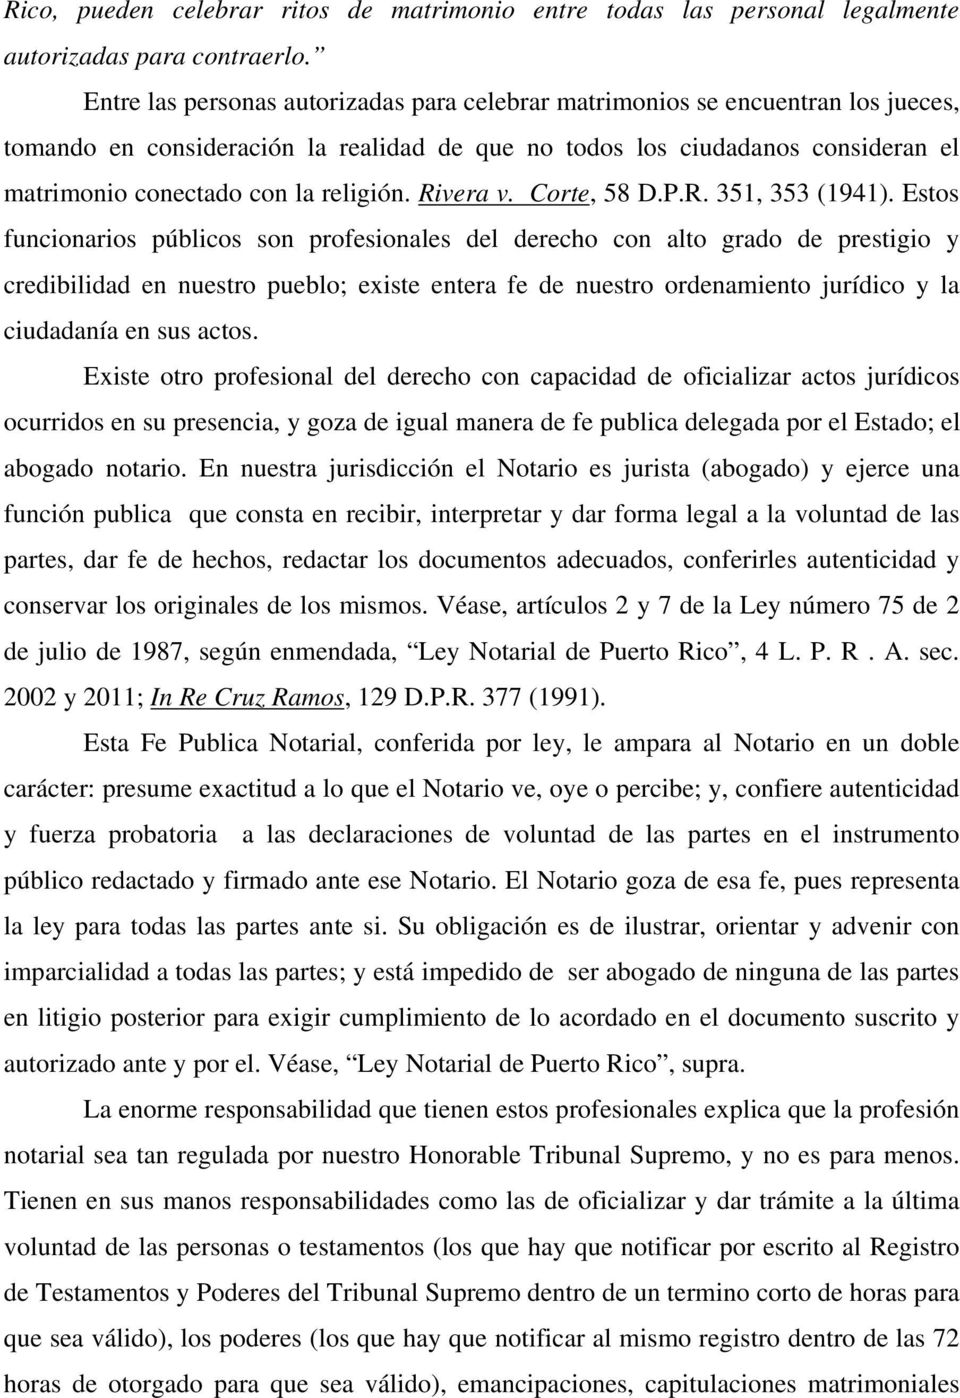 religión. Rivera v. Corte, 58 D.P.R. 351, 353 (1941).